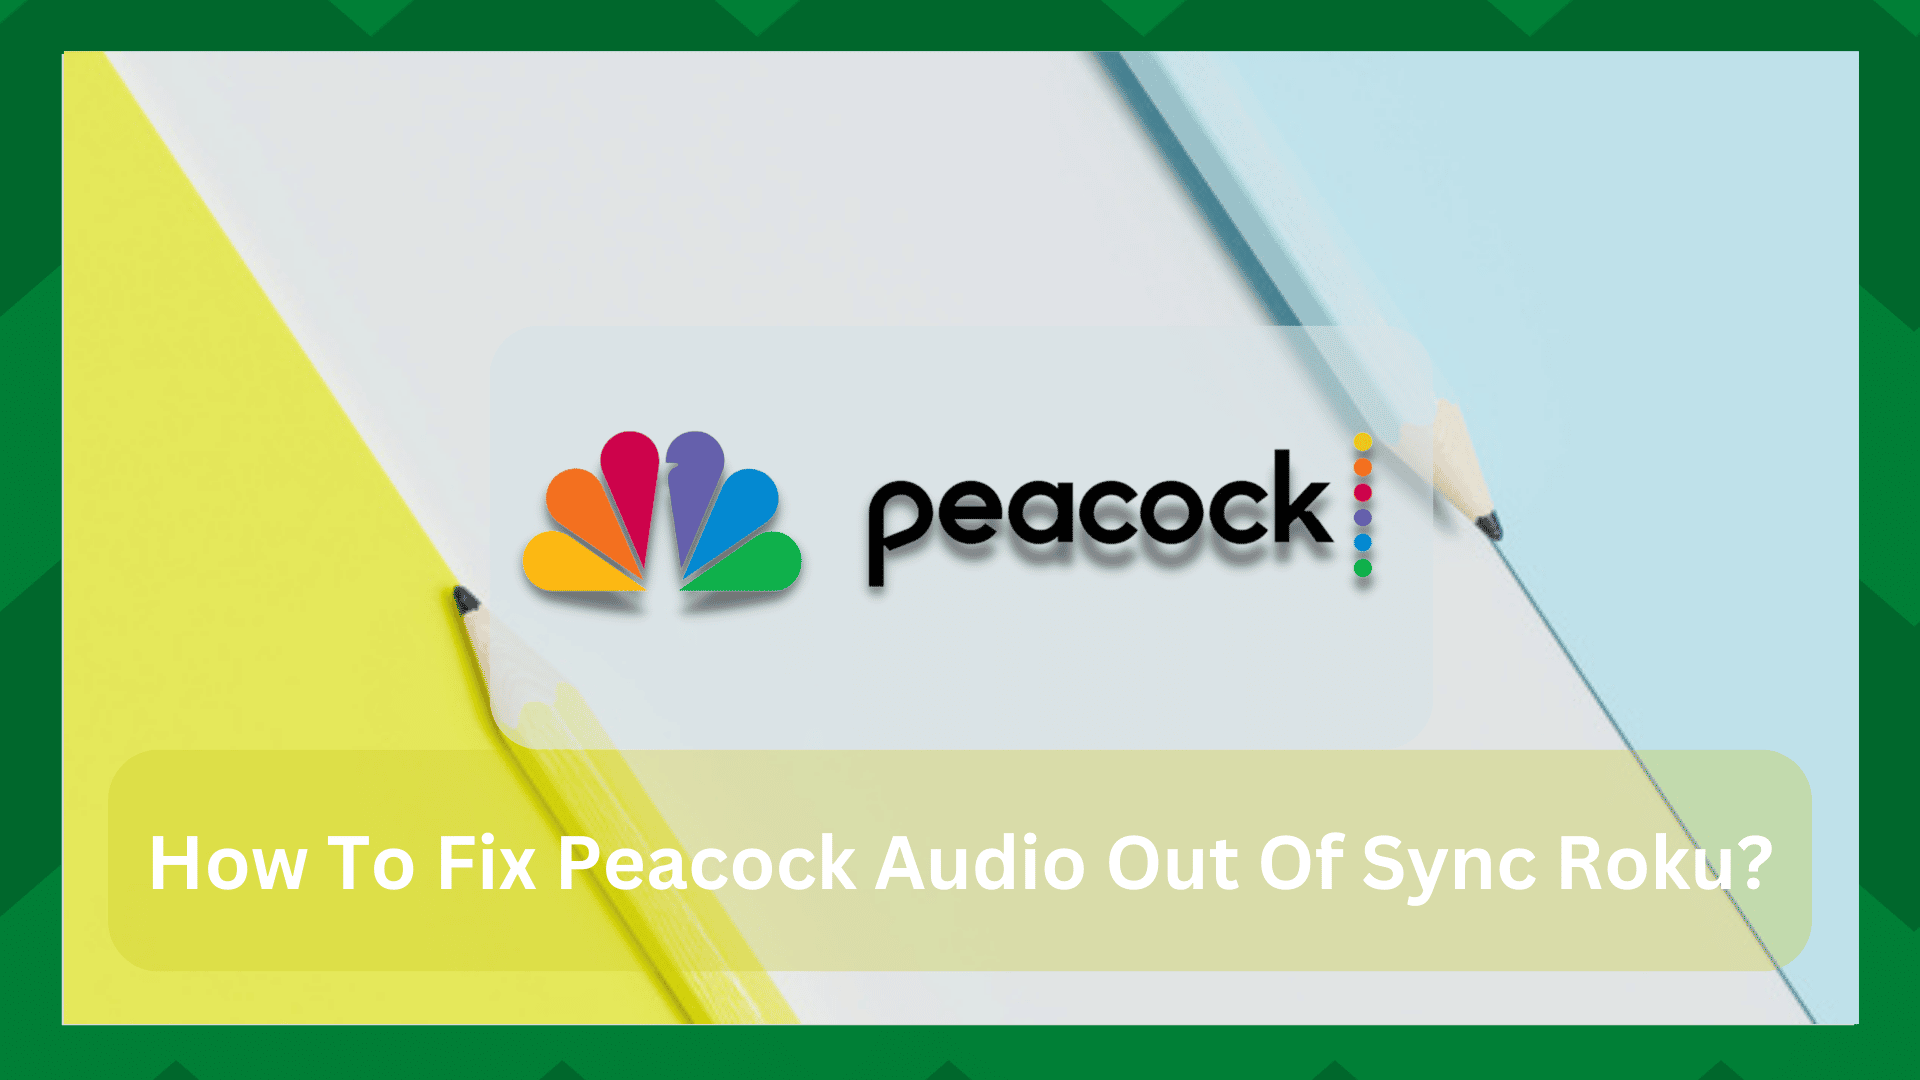 5 Soluciones Rápidas Para Peacock Audio Out Of Sync Roku